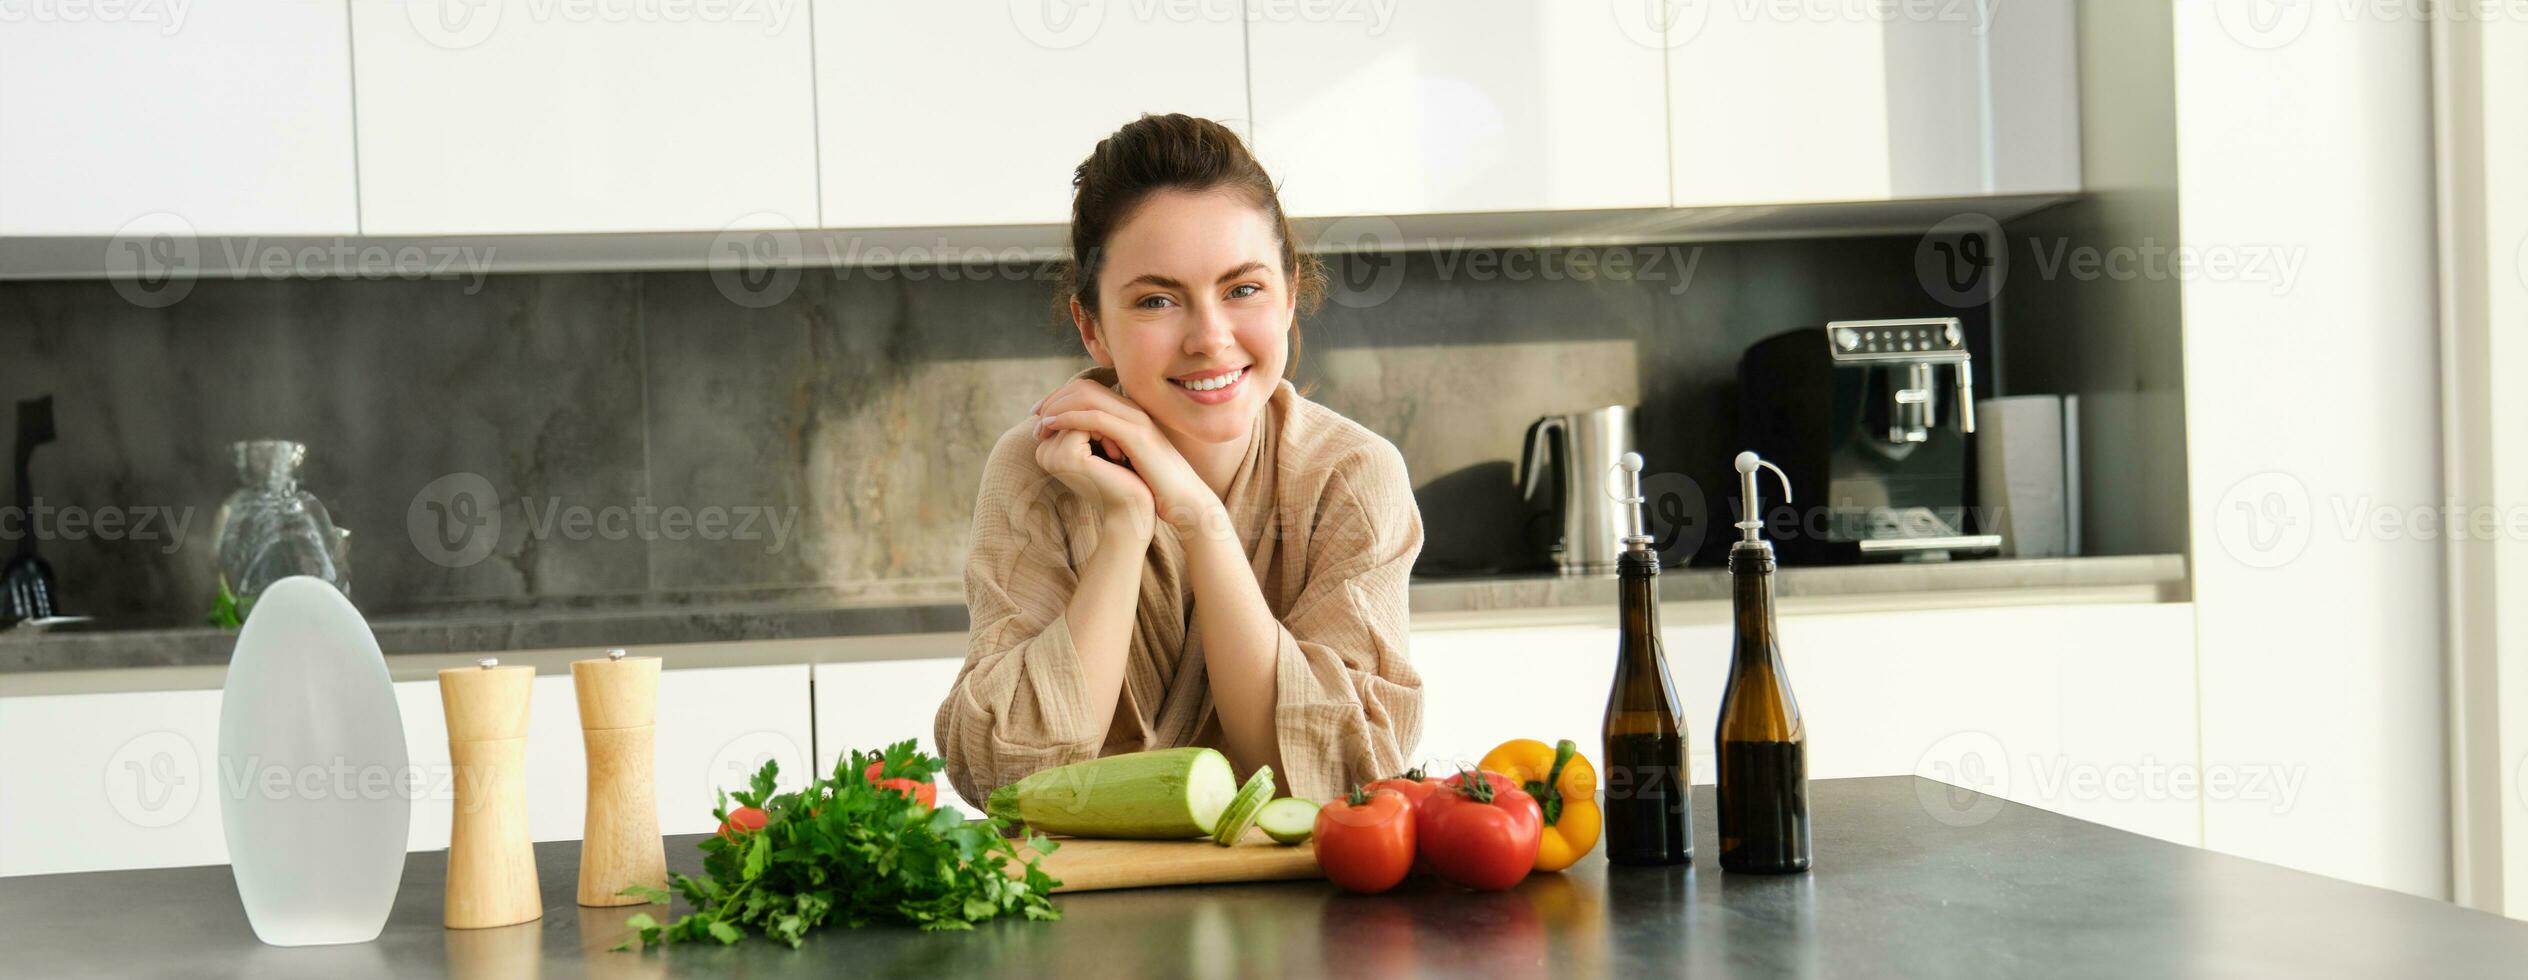 portrait de souriant Jeune femme cuisine dans cuisine dans confortable vêtements, permanent près compteur avec couper conseil, légumes, courgette, en train de préparer dîner pour famille, fabrication salade photo